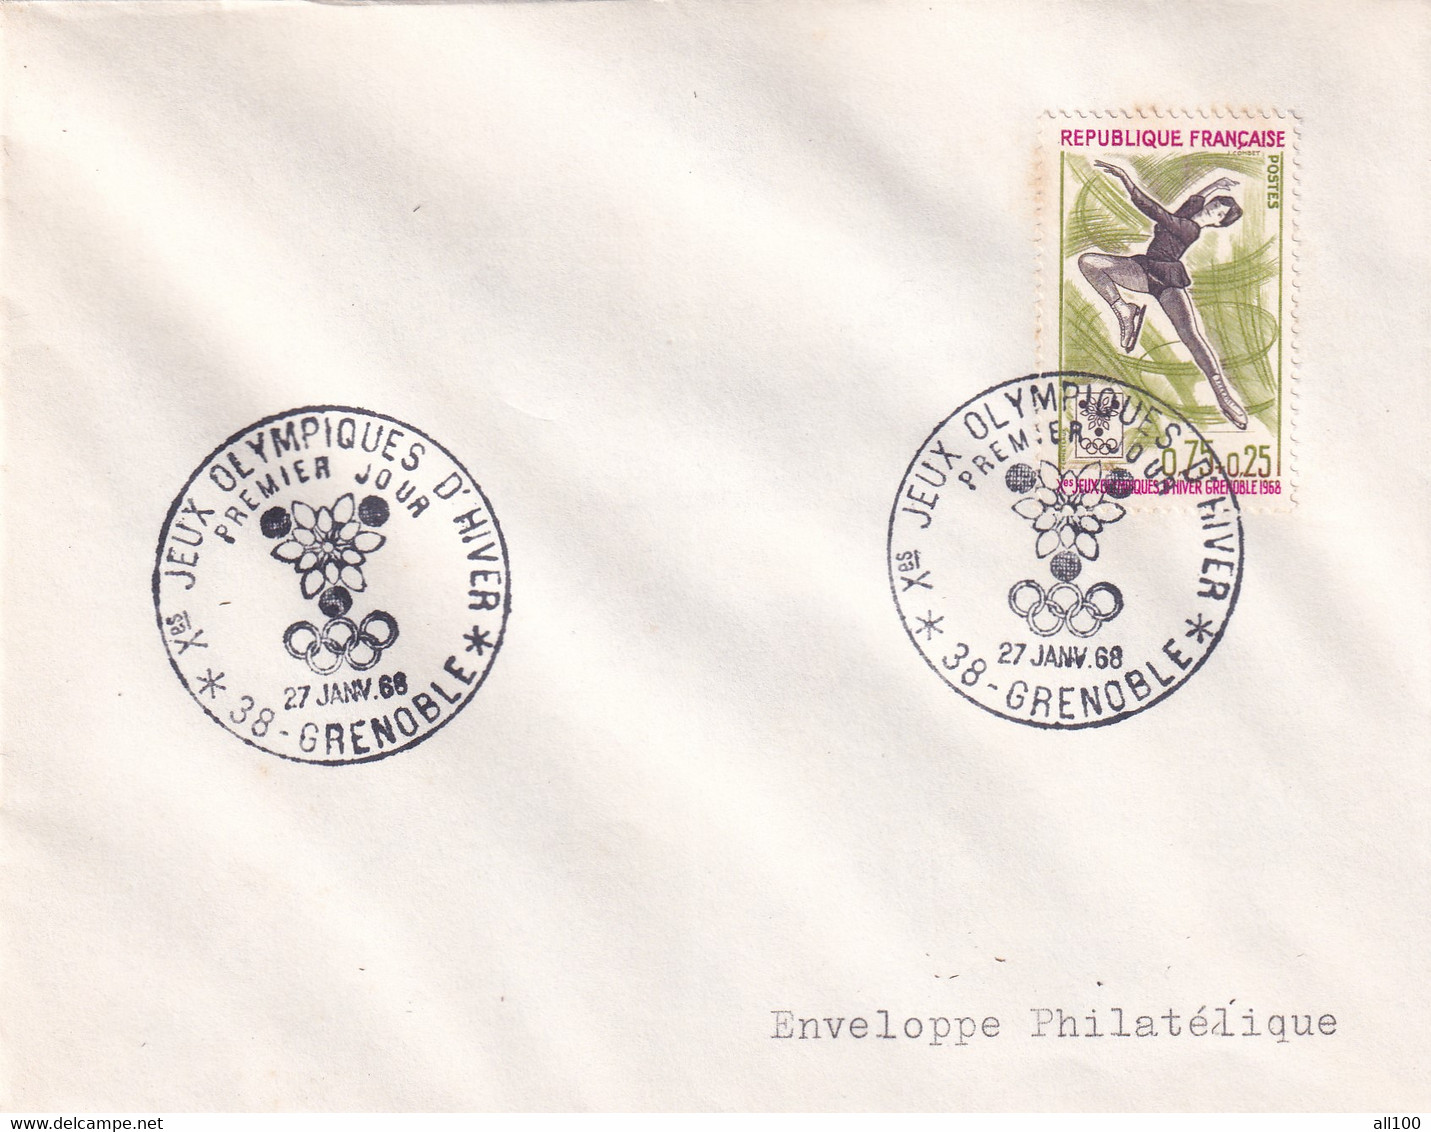 A21887 - Jeux Olympiques D'Hiver Grenoble Cover Envelope Unused 1968 Stamp Republique Francaise Enveloppe Philatelique - Hiver 1968: Grenoble